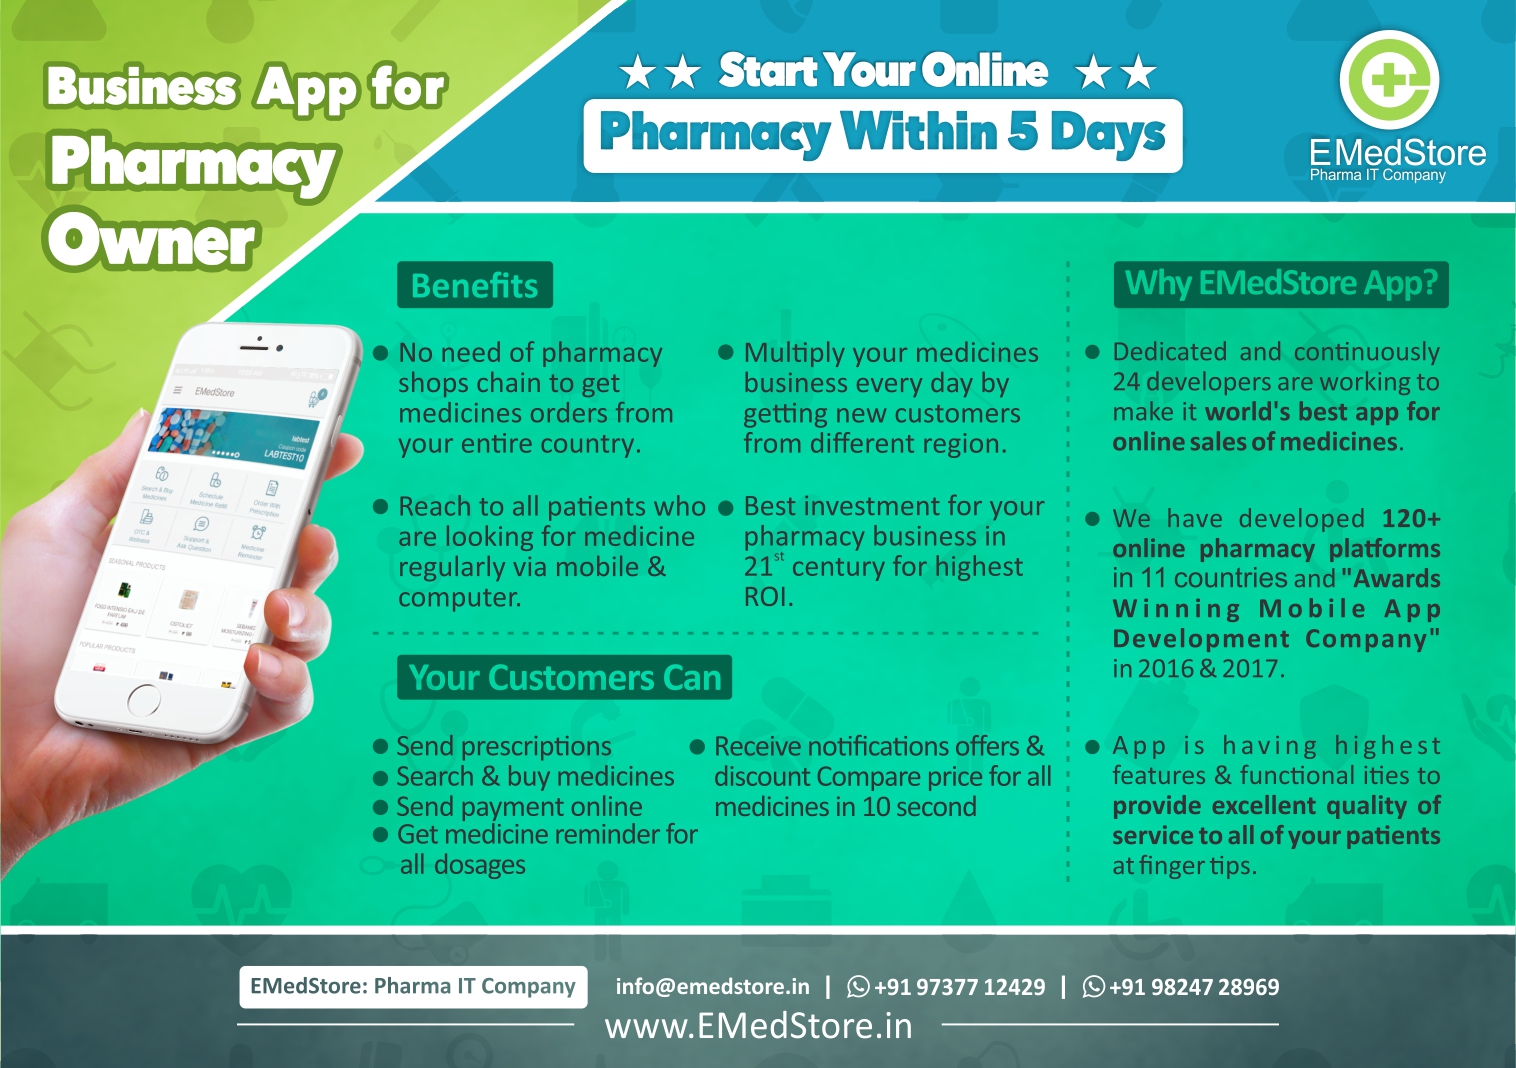 Business App for Pharmacy Owner